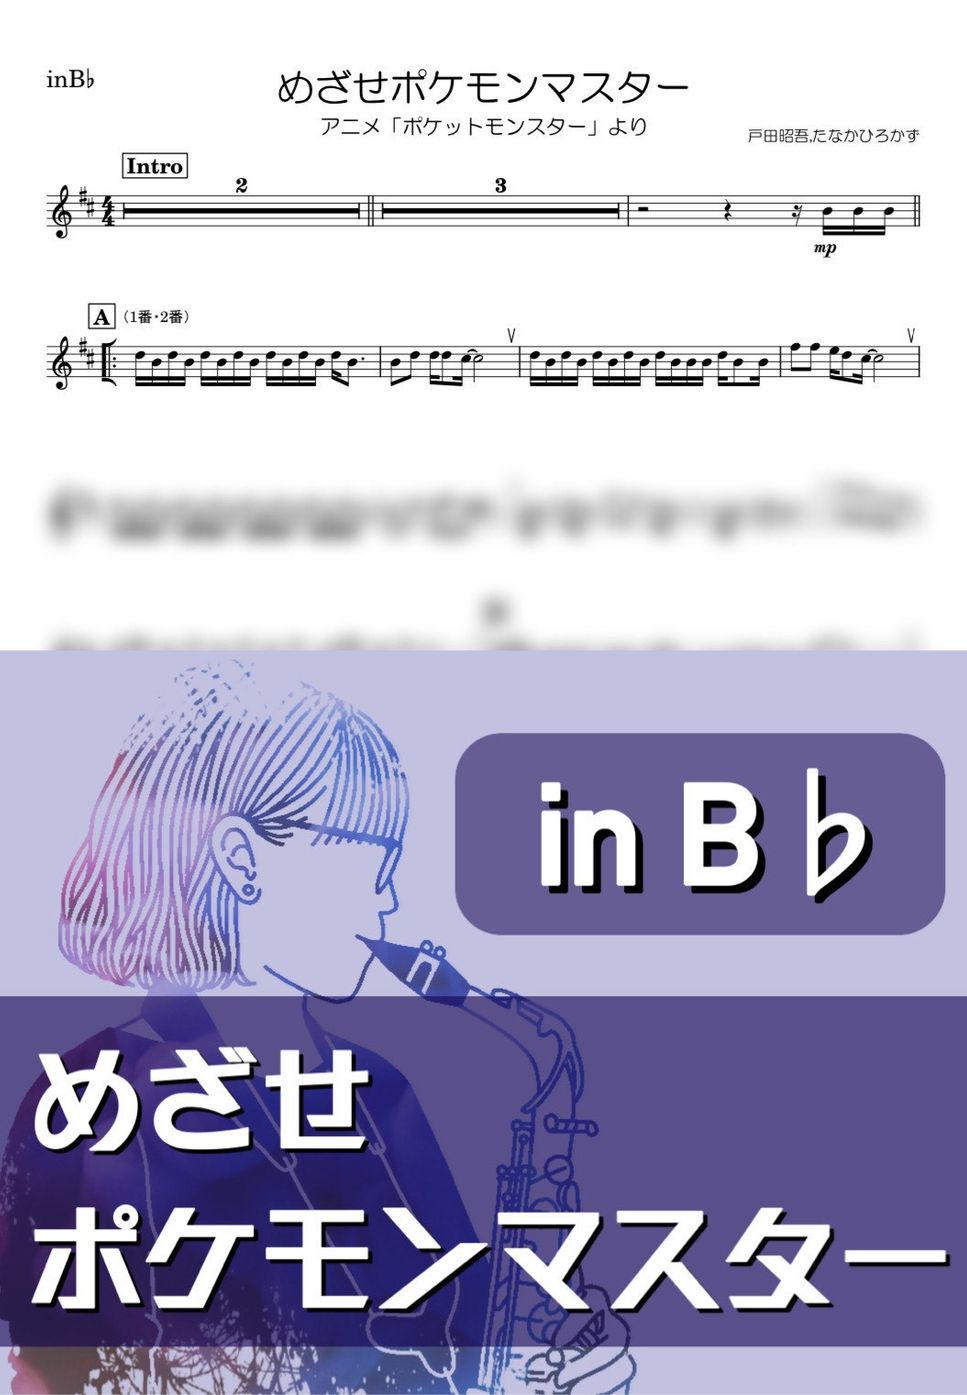 ポケモン - めざせポケモンマスター (B♭) by kanamusic